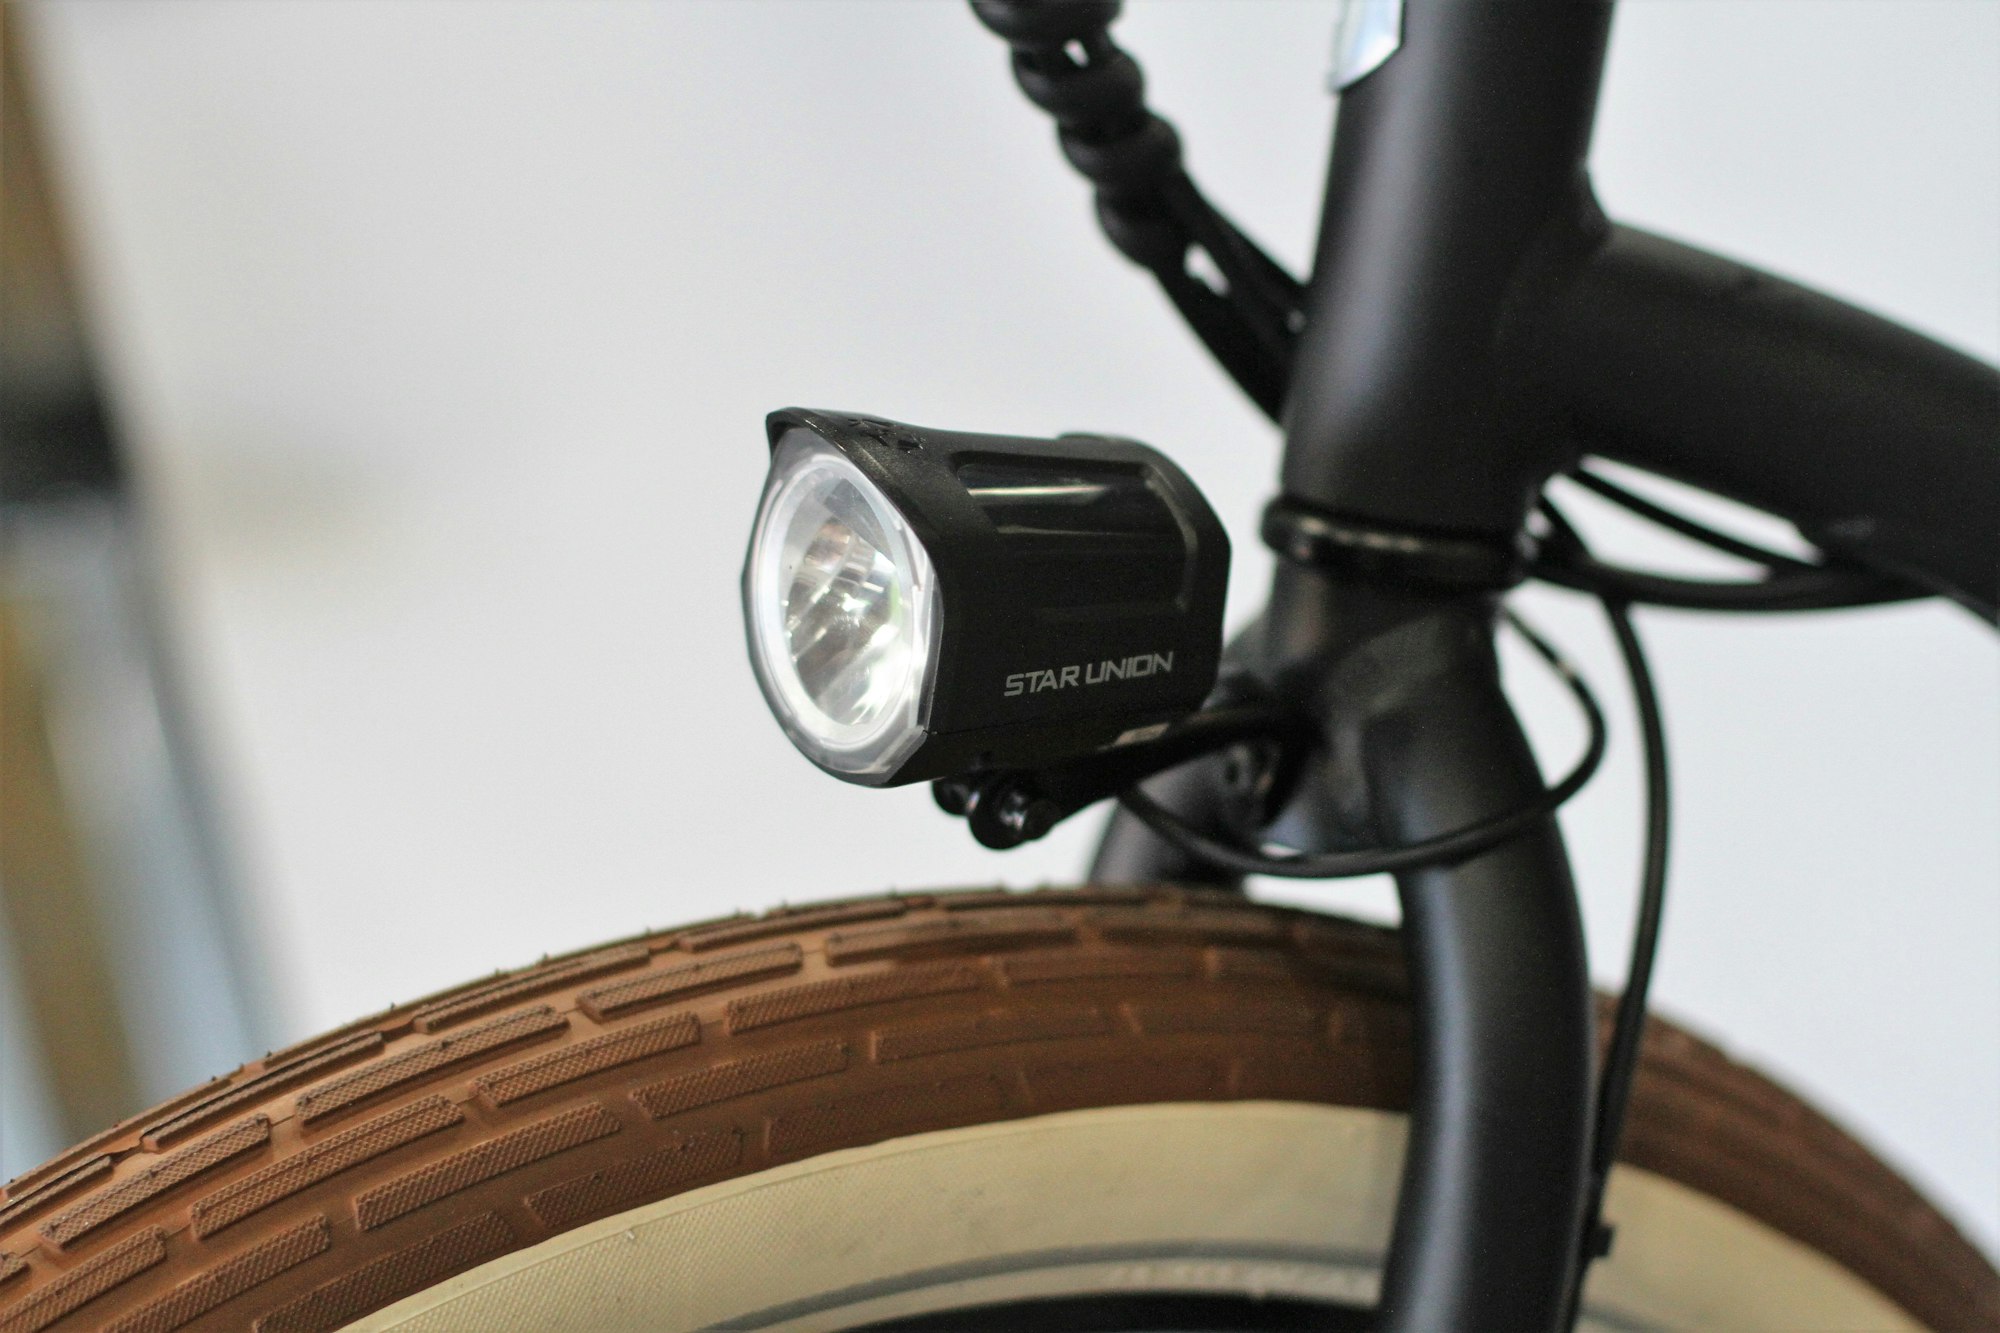 The Brightest Bike Lights for Dark Winter Rides